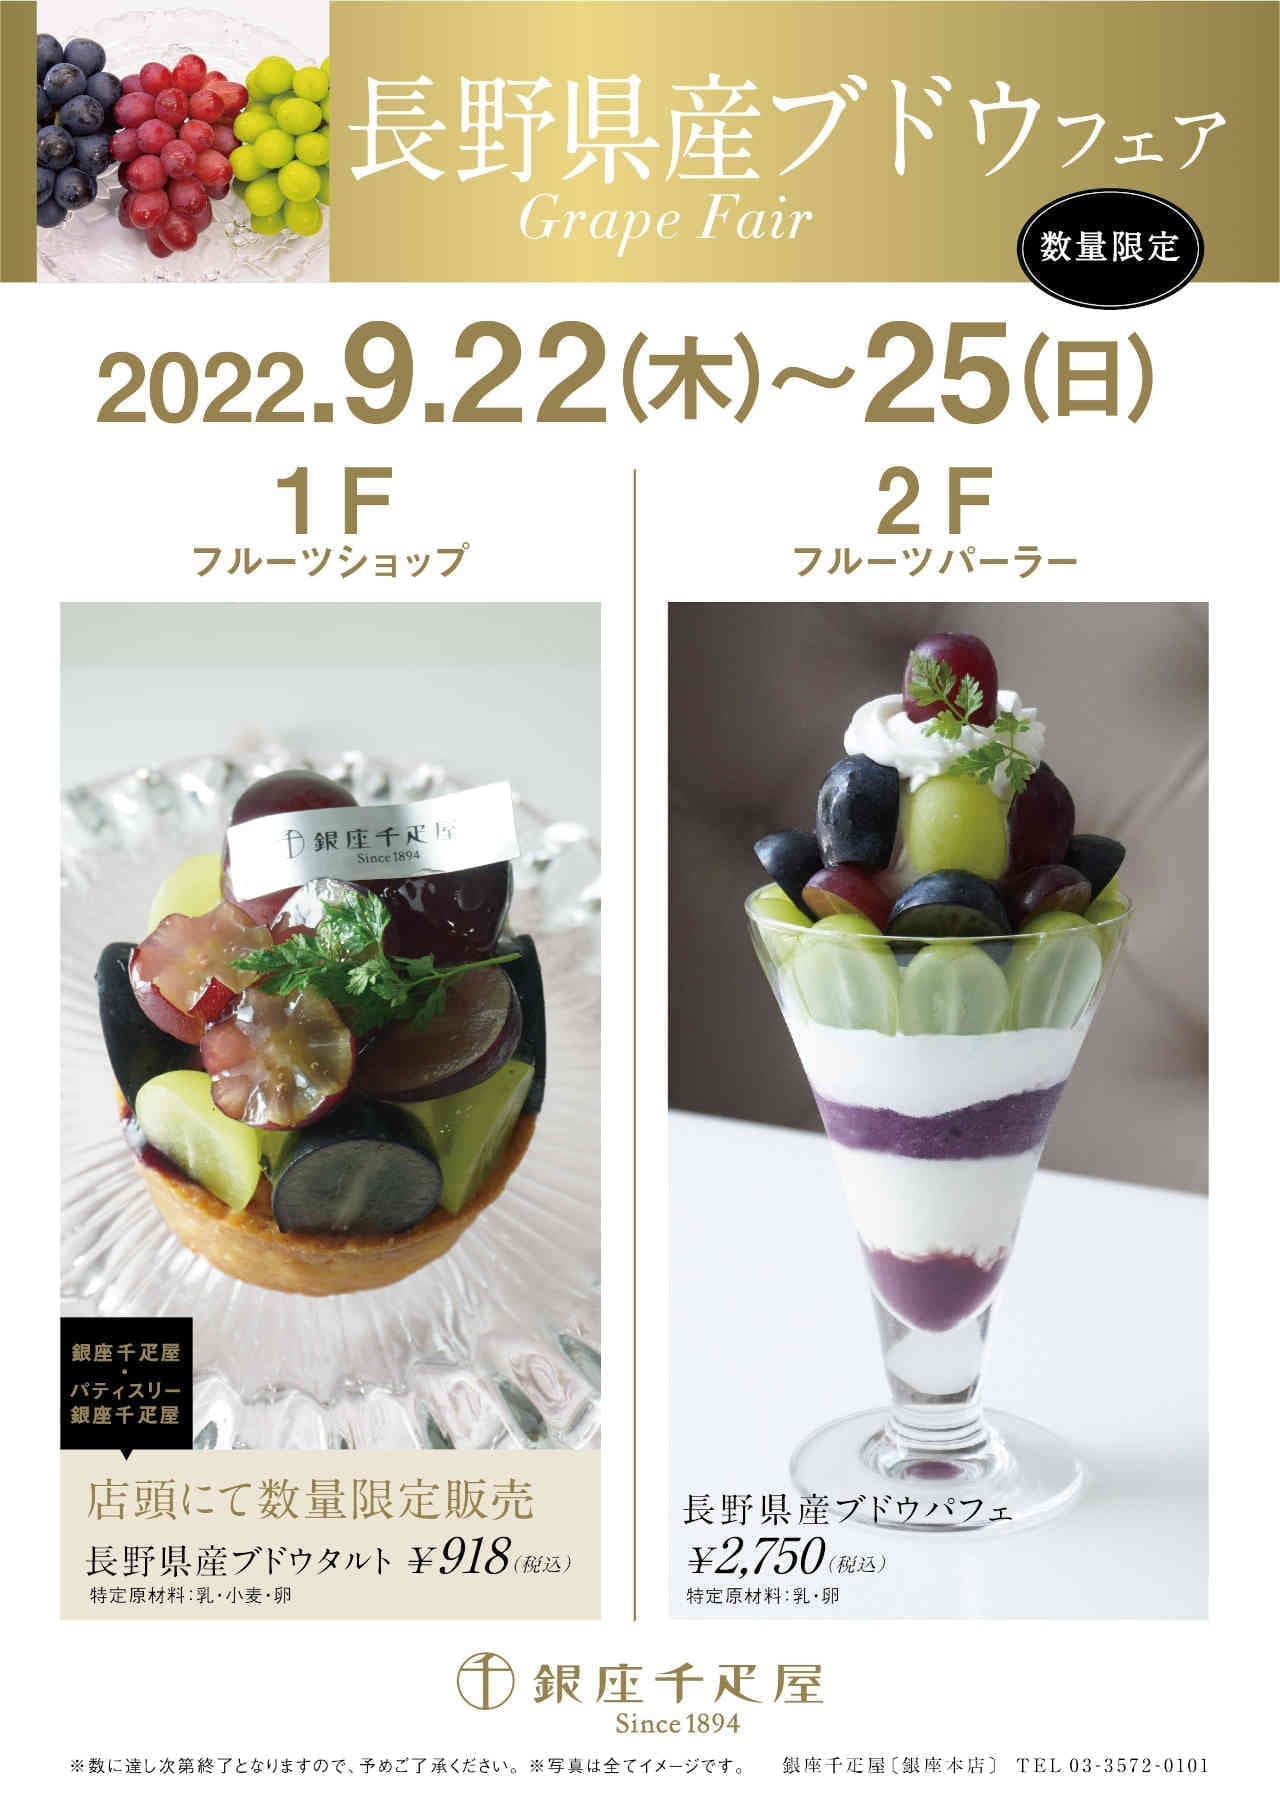 Ginza Sembikiya "Nagano Prefecture grape tart" and "Nagano Prefecture grape parfait